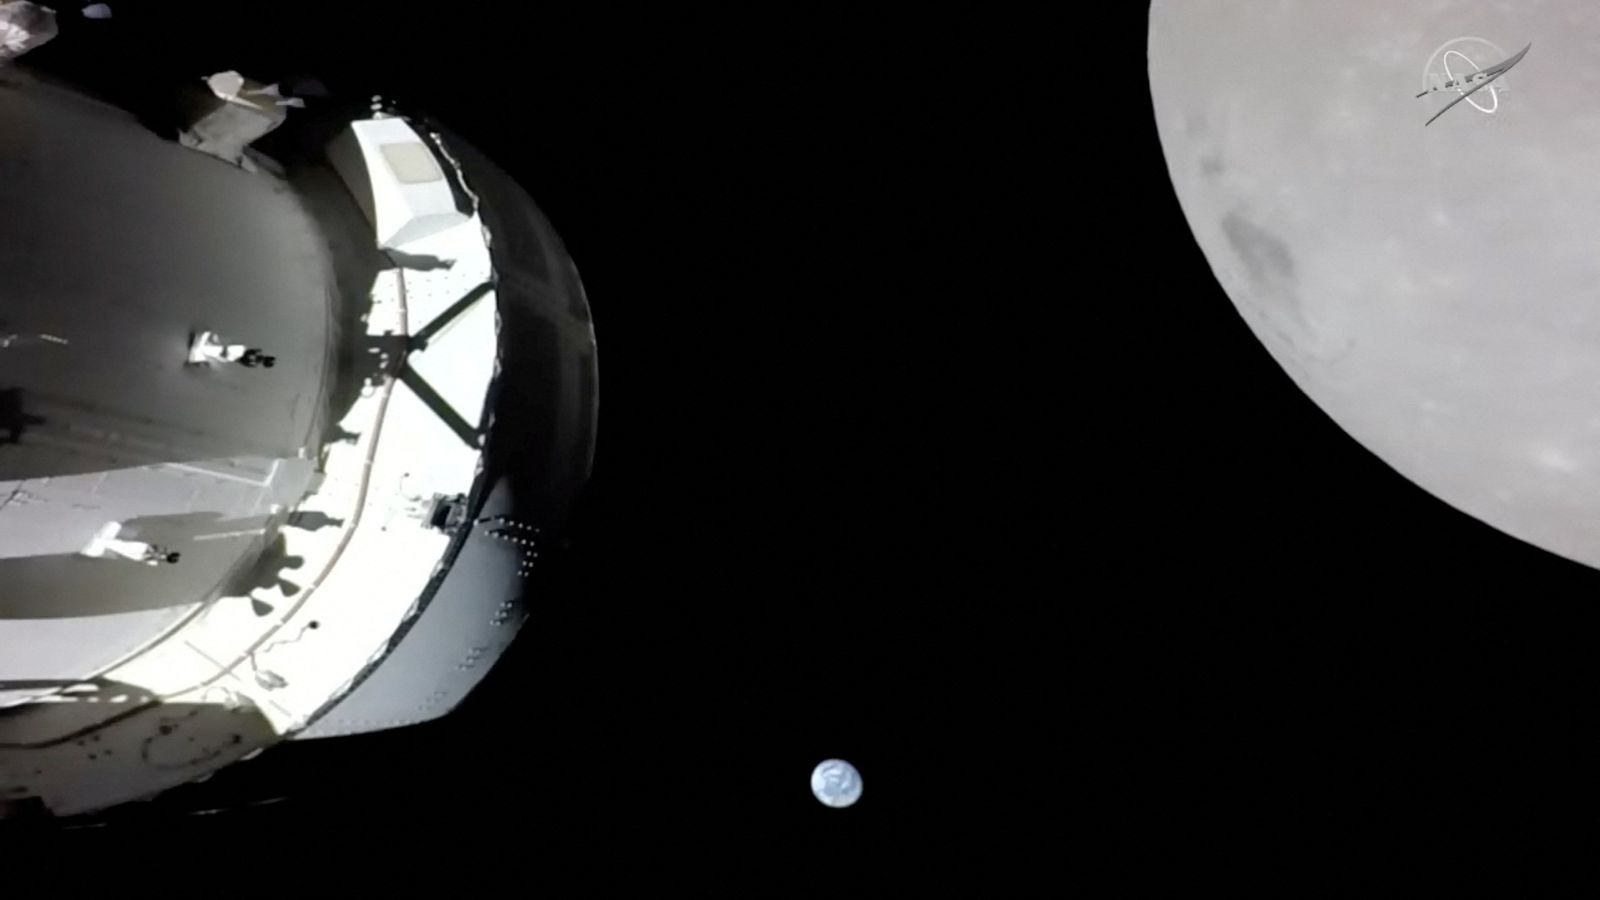 Pesawat ruang angkasa Orion NASA terbang pulang ke Bumi – setelah penyelaman bulan terakhir |  Berita sains dan teknologi